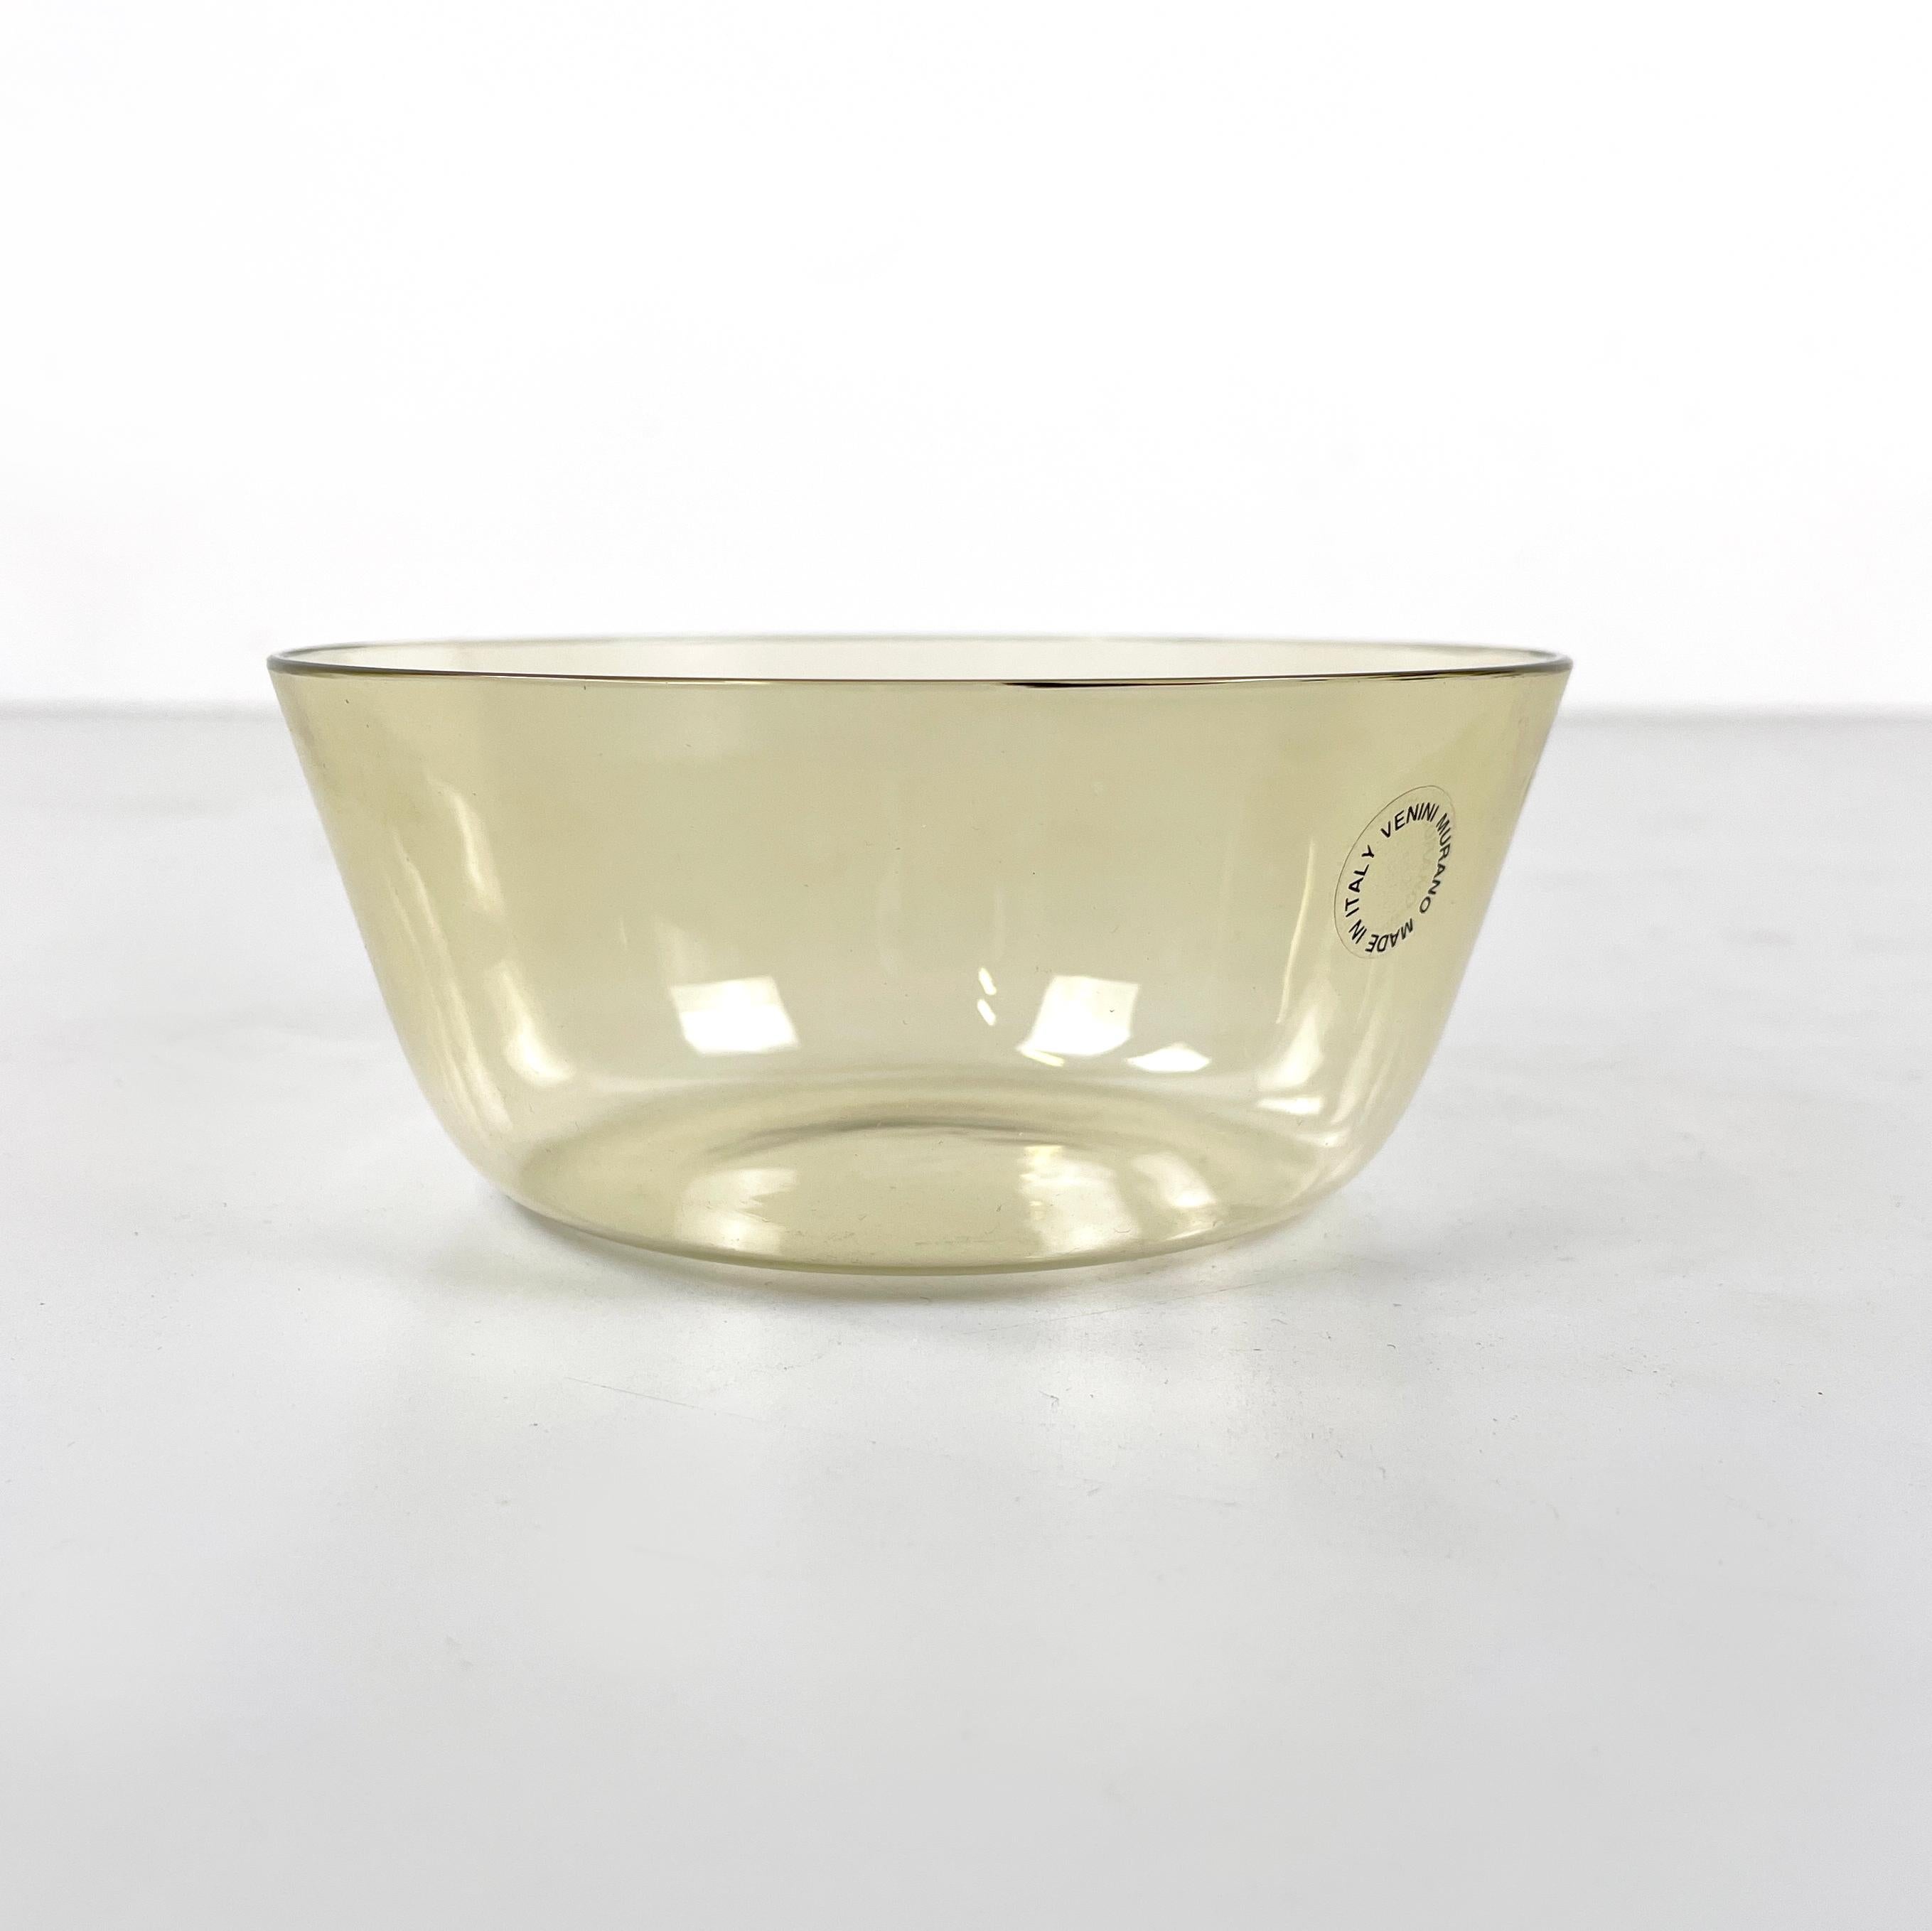 Bol décoratif moderne italien en verre de Murano jaune transparent par Venini, années 1990
Coupe décorative à base ronde en verre de Murano jaune transparent. Parfait comme pièce maîtresse ou comme vide-poche.
Produit par VENINI en 1990. Label